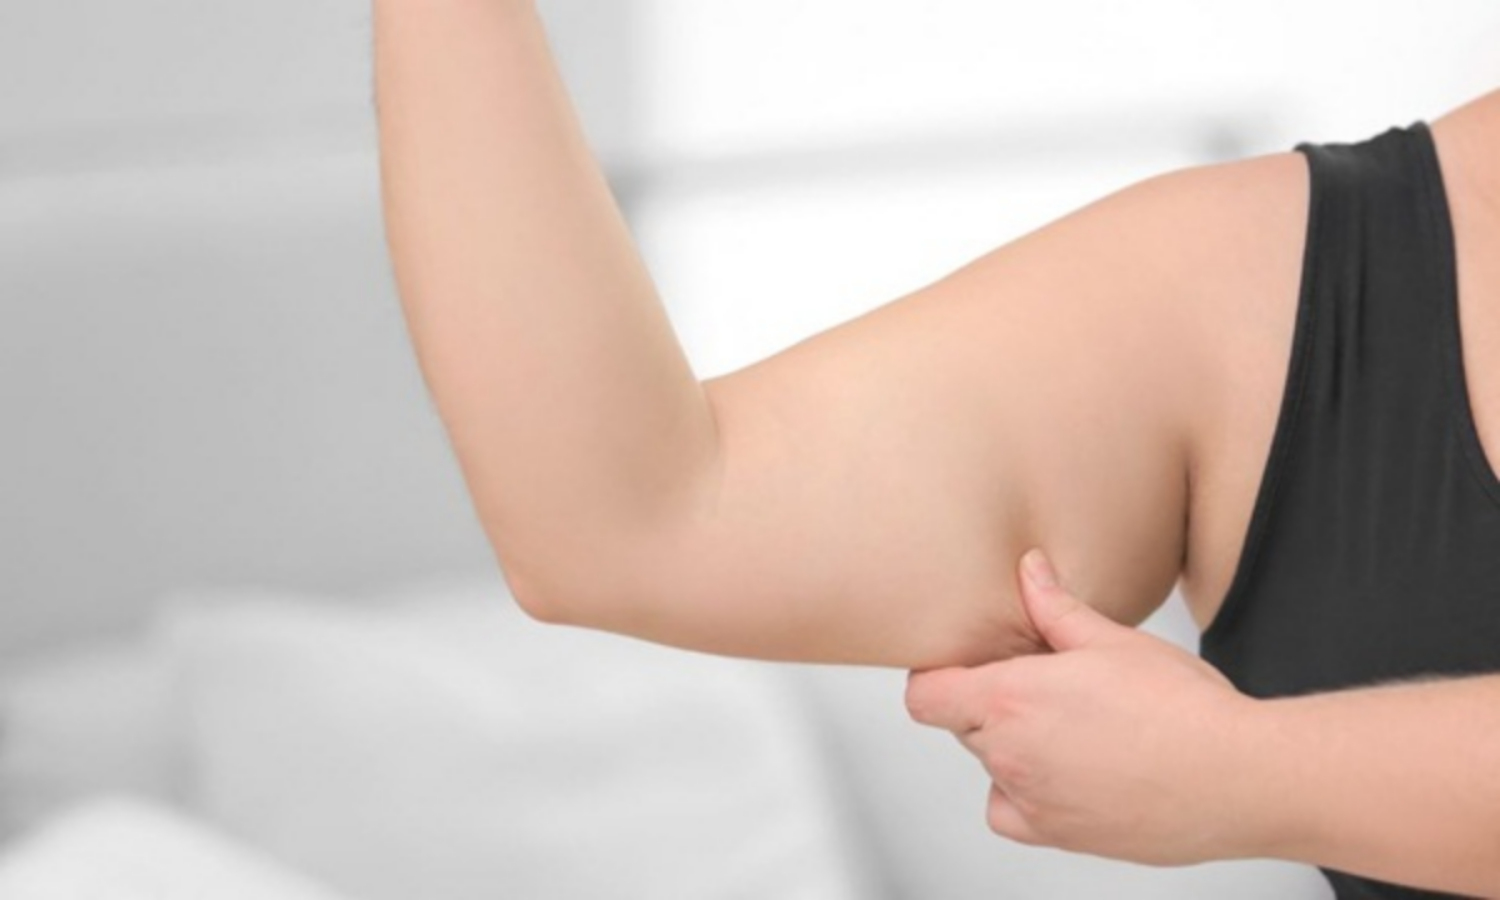 Mỡ bắp tay nhiều có thể do tăng cân đột ngột